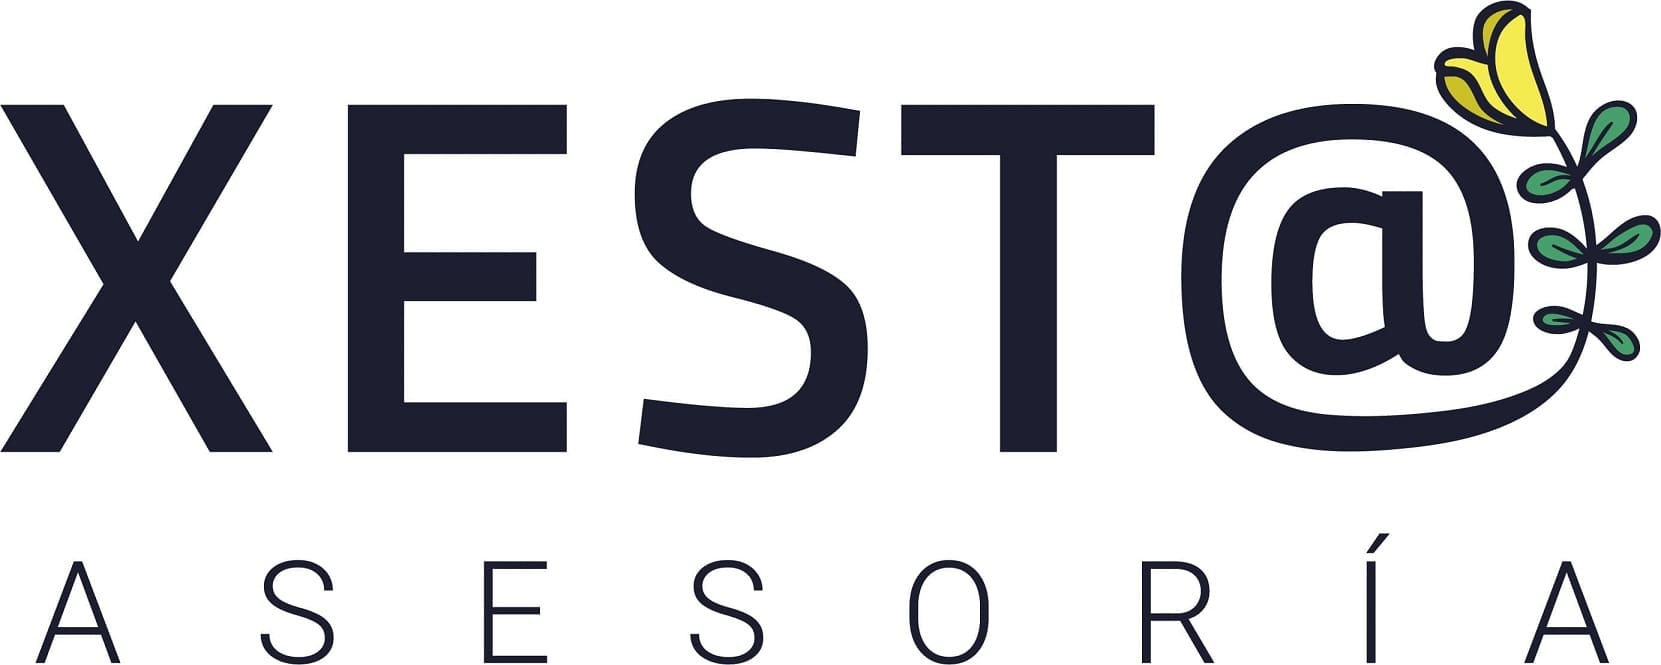 Logo ASESORIA XESTA